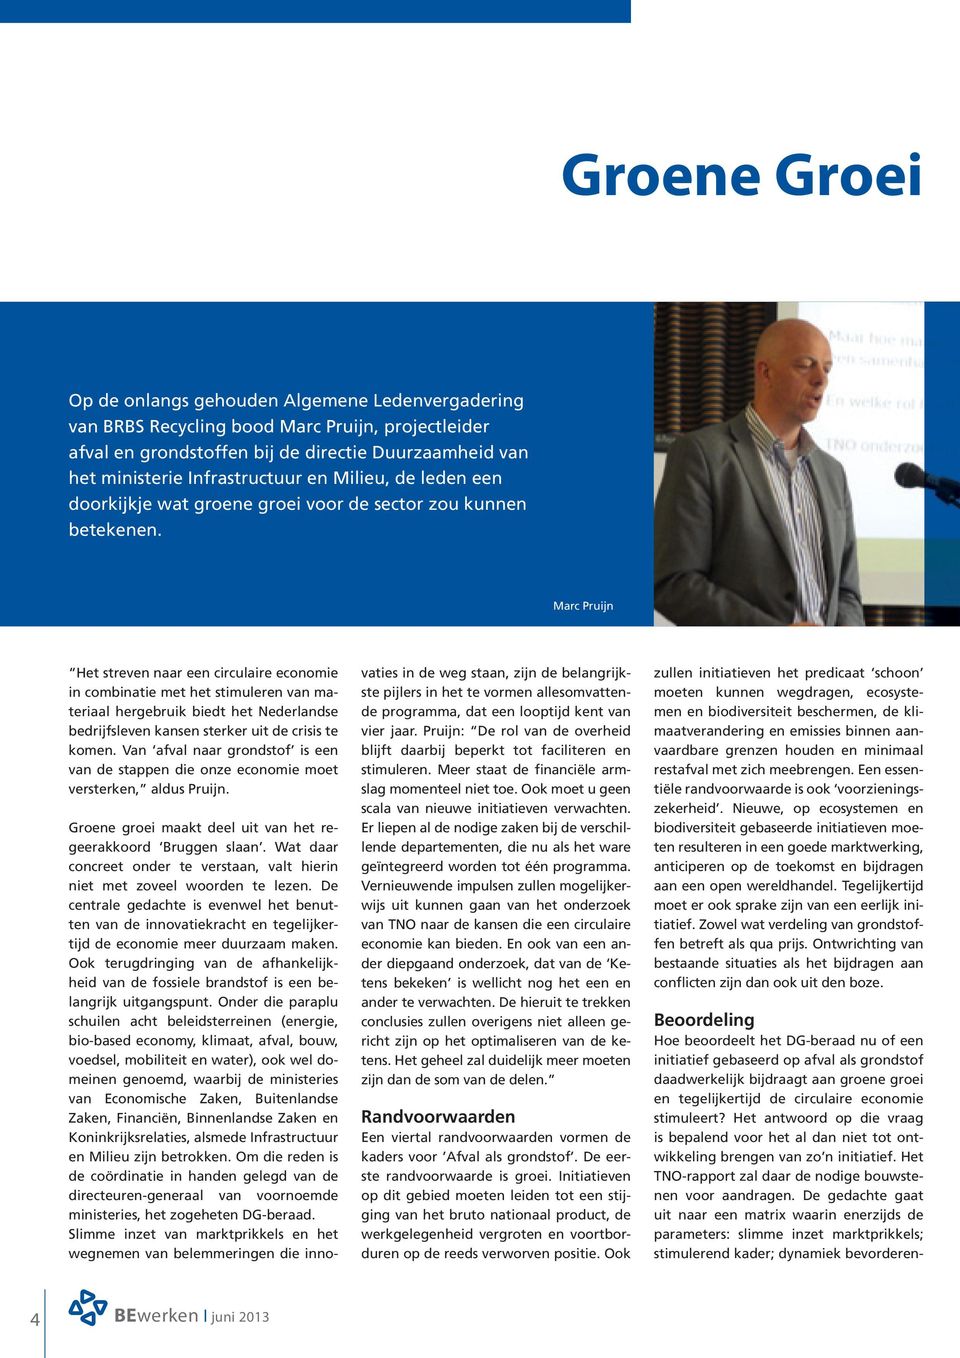 Marc Pruijn Het streven naar een circulaire economie in combinatie met het stimuleren van materiaal hergebruik biedt het Nederlandse bedrijfsleven kansen sterker uit de crisis te komen.